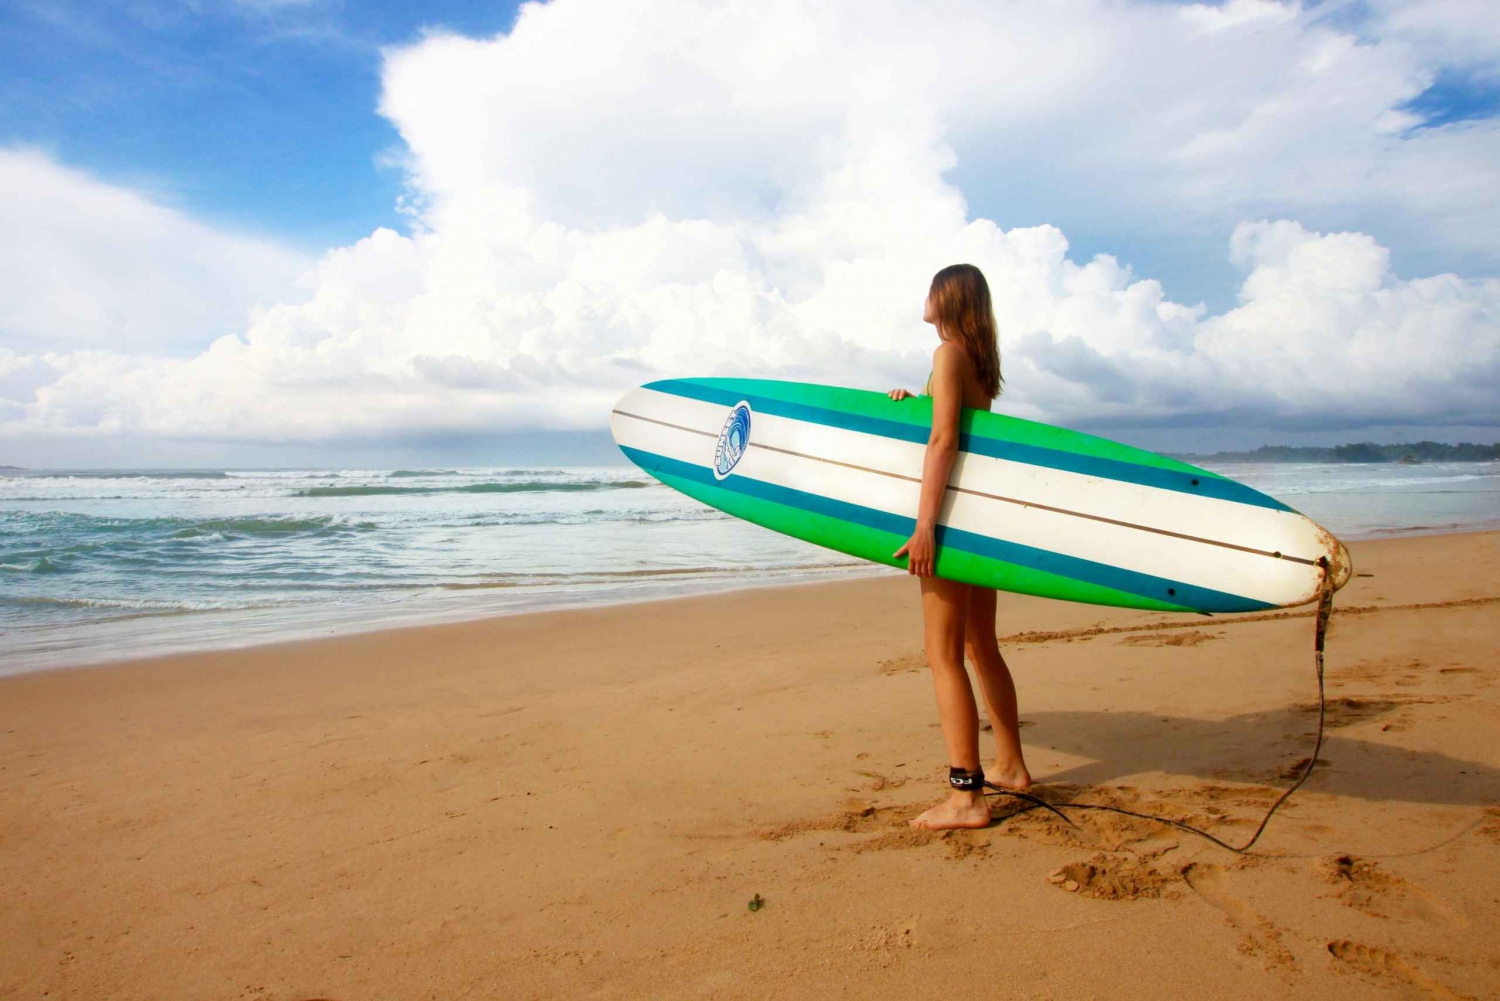 Surfkurs - Perfekte Welle für Anfänger und Fortgeschrittene Surfer